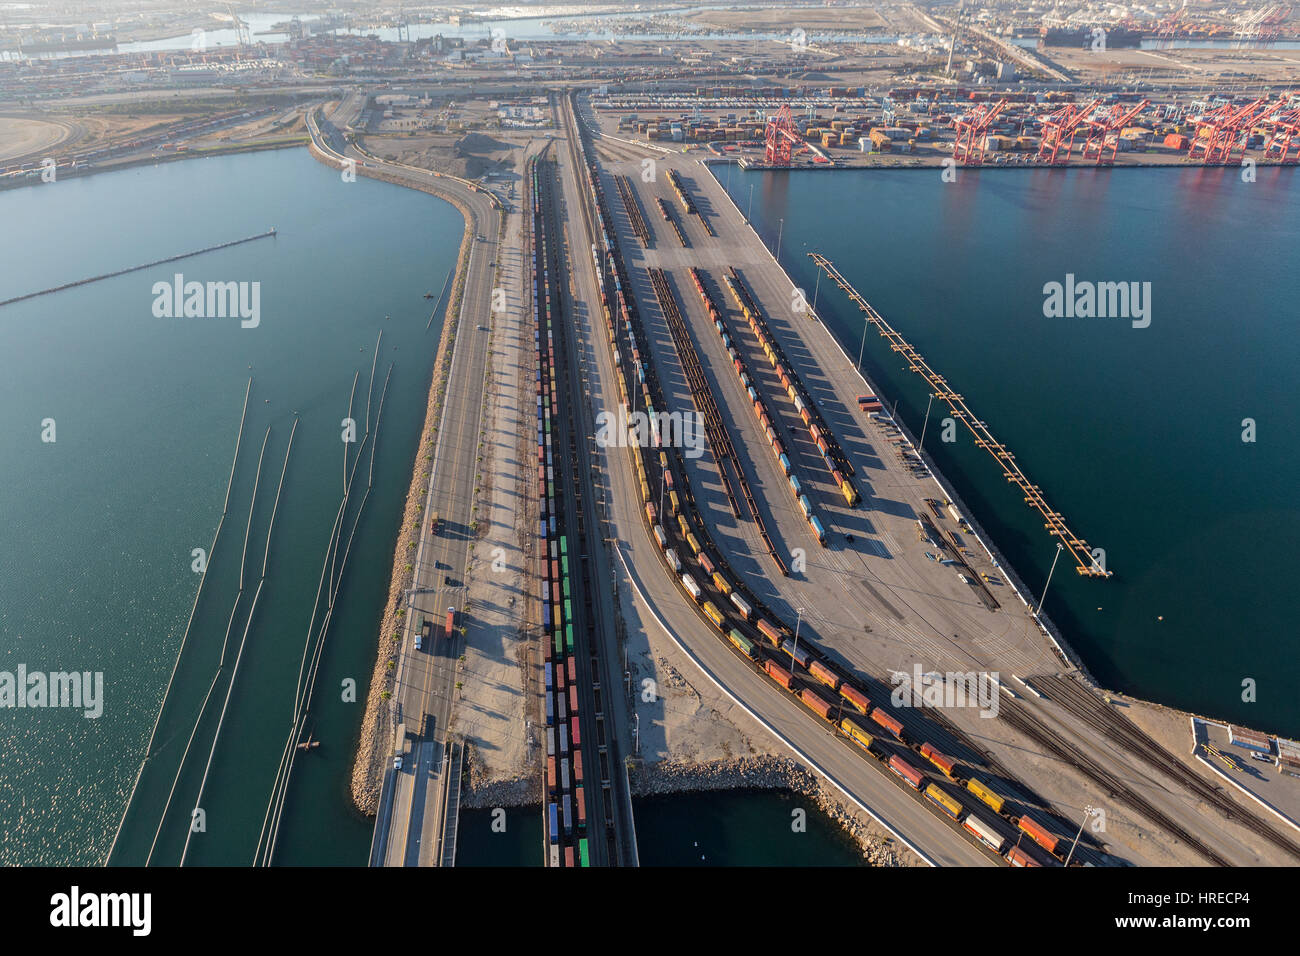 Los Angeles, Kalifornien, USA - 16. August 2016: Cargo Containerzüge aufgereiht an den Häfen von Long Beach und Los Angeles. Stockfoto